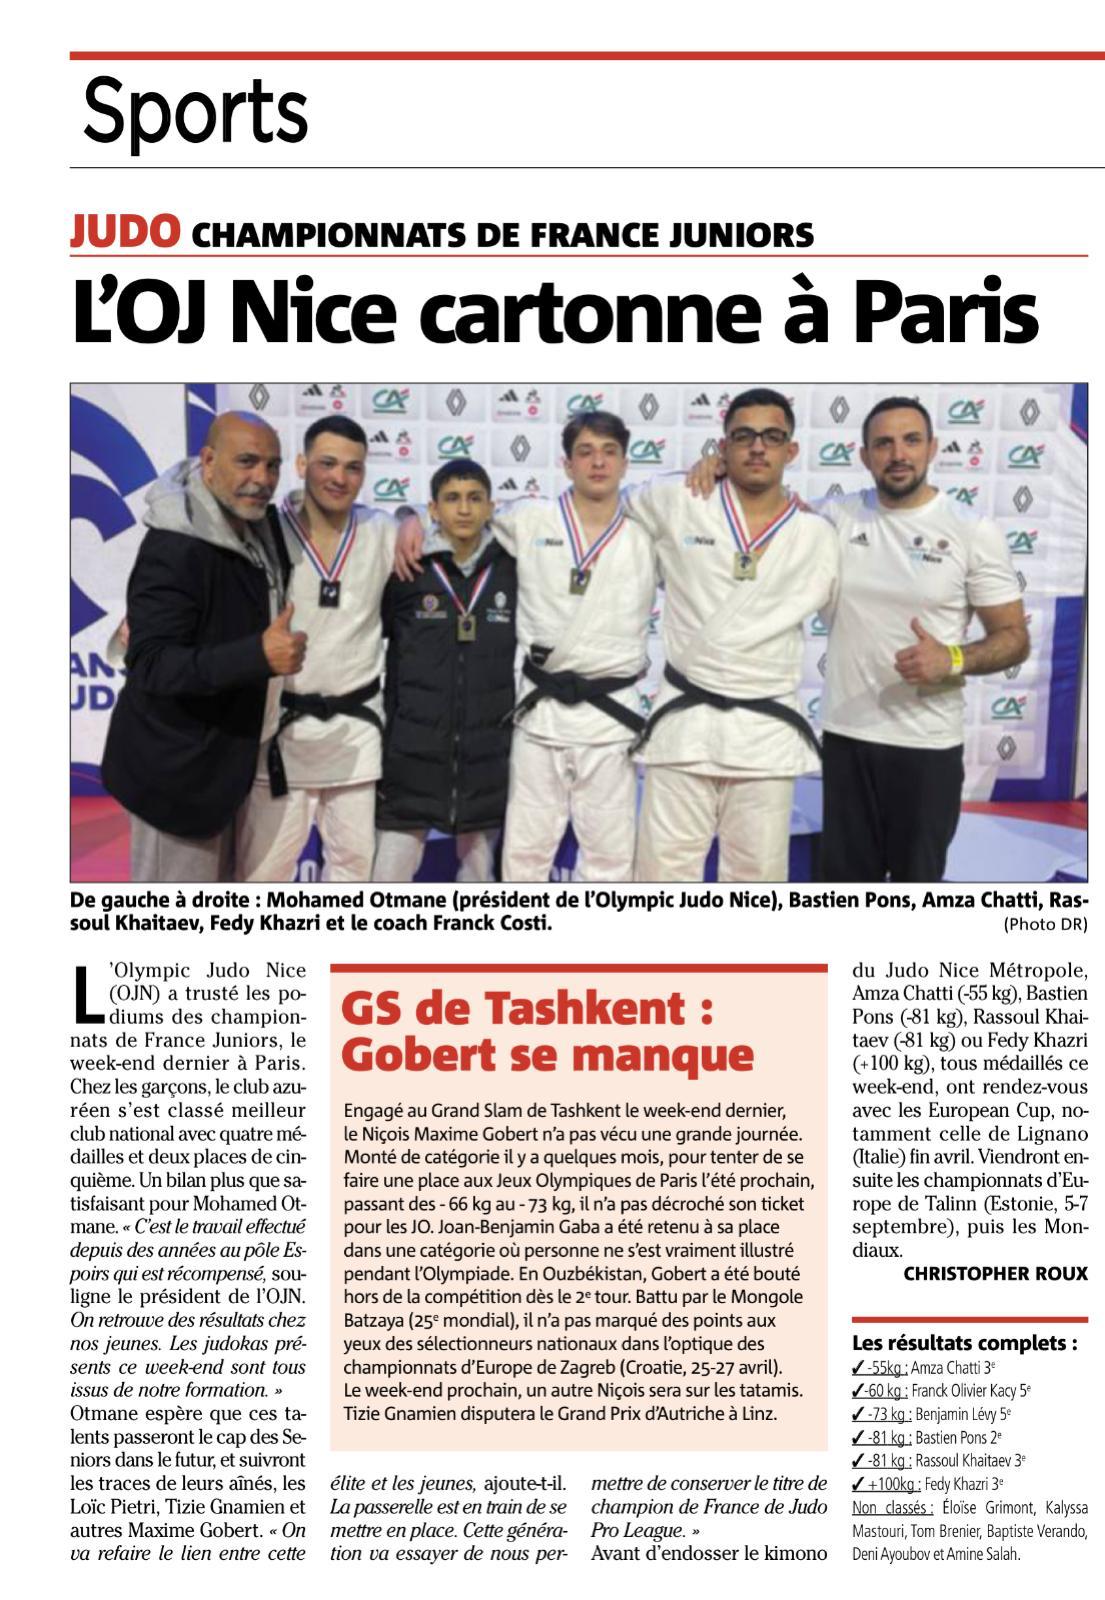 L’OJ Nice brille aux Championnats de France Juniors de Judo